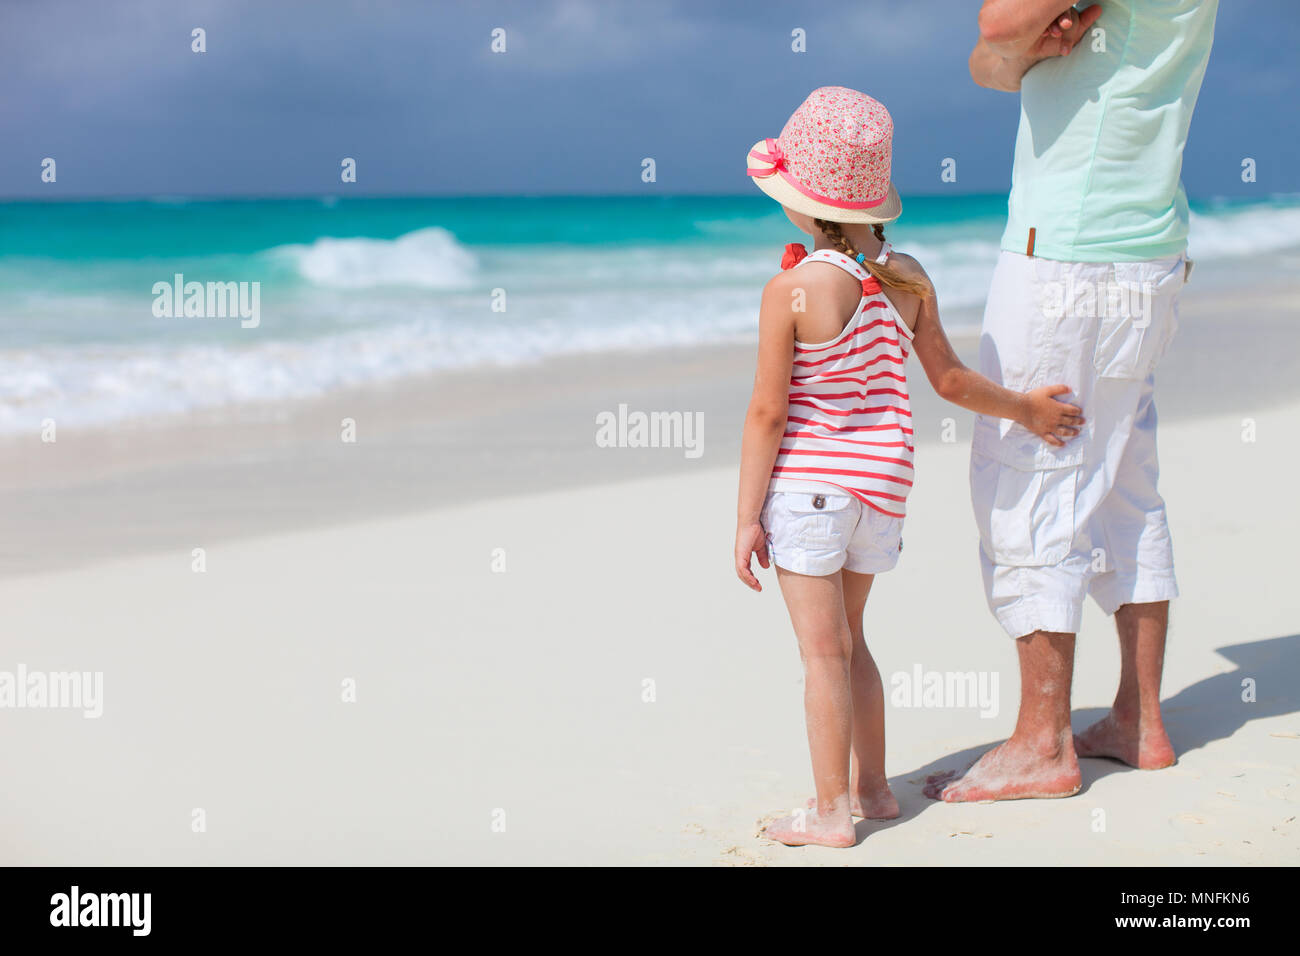 Дочка папа на пляже. Девочка с папой на пляже. Папа с дочерью на пляже фотосессия. Отец на пляже. Папа и дочь пляжная прогулка.